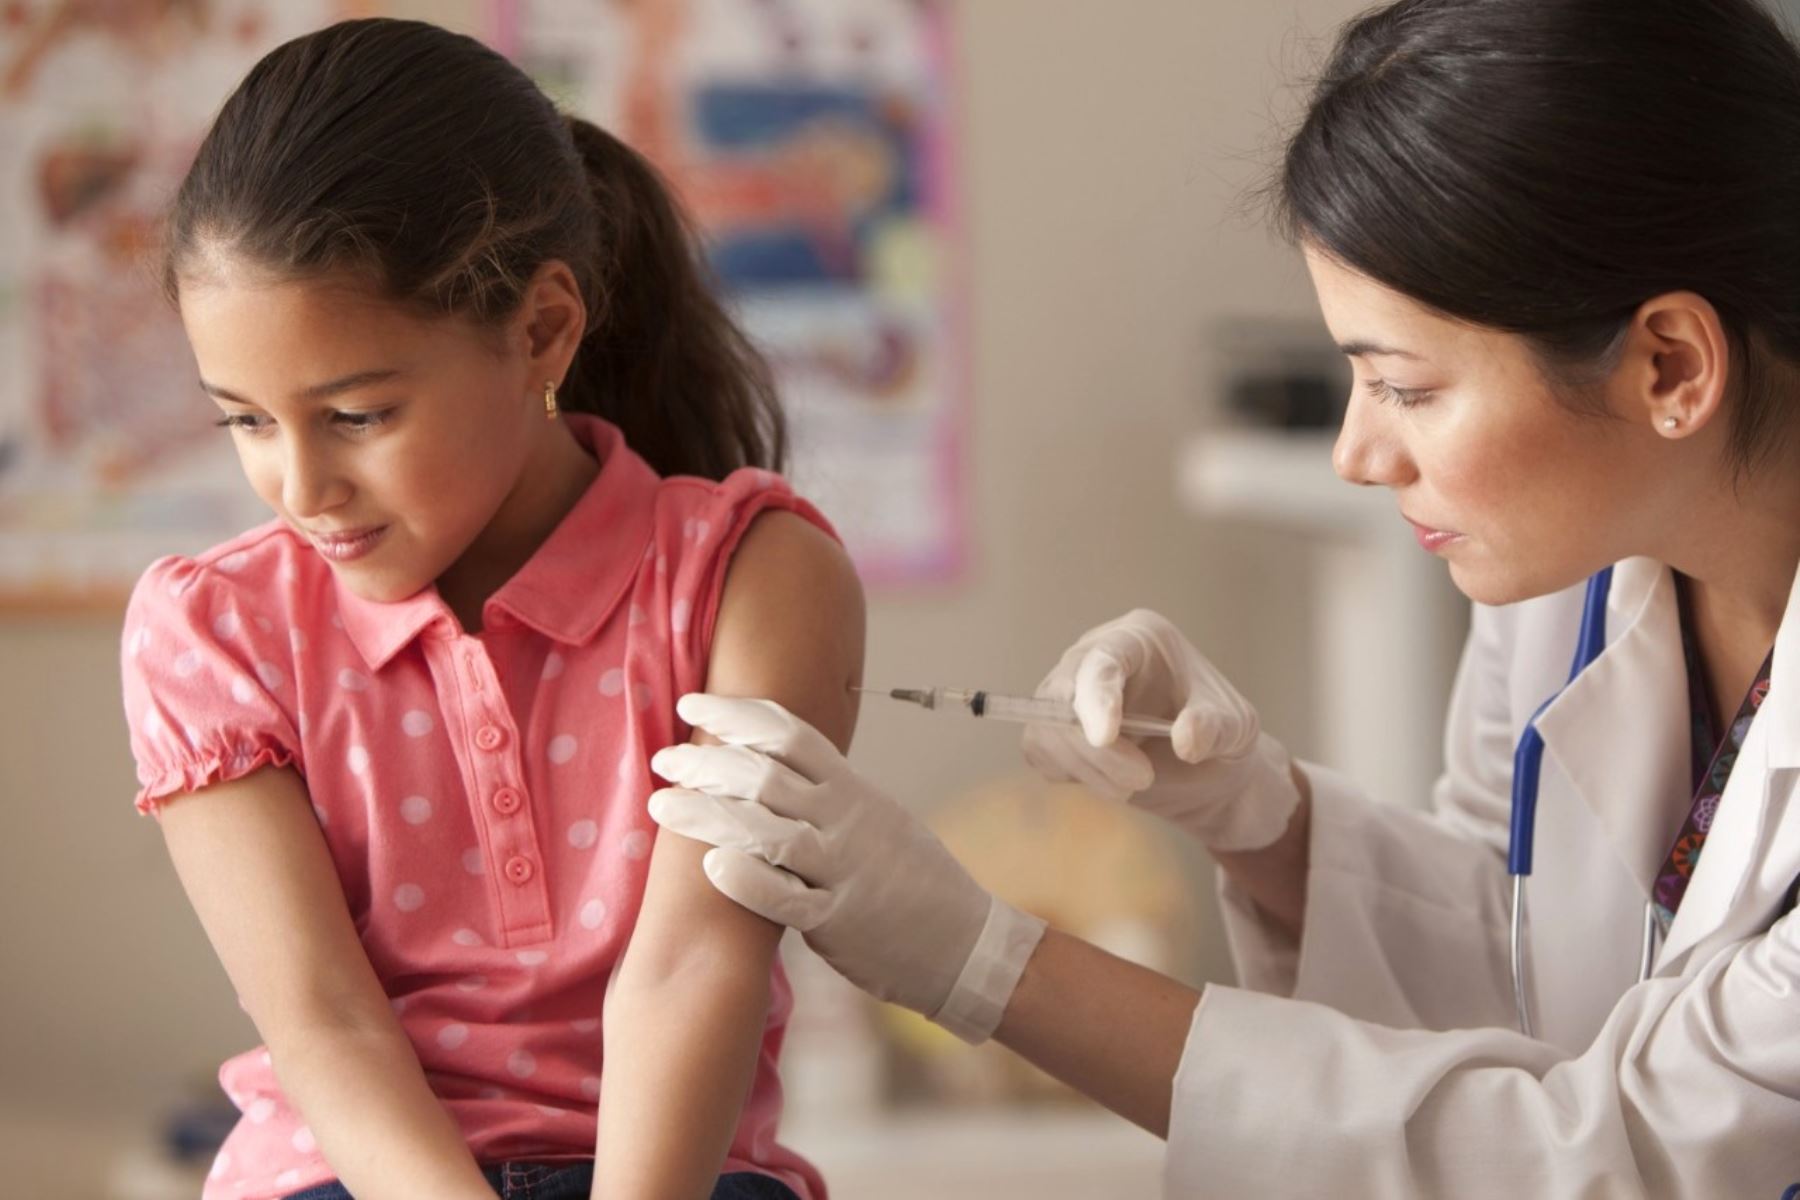 Salud envió al PANI cuatro casos de padres que negaron a sus hijas vacuna contra papiloma humano